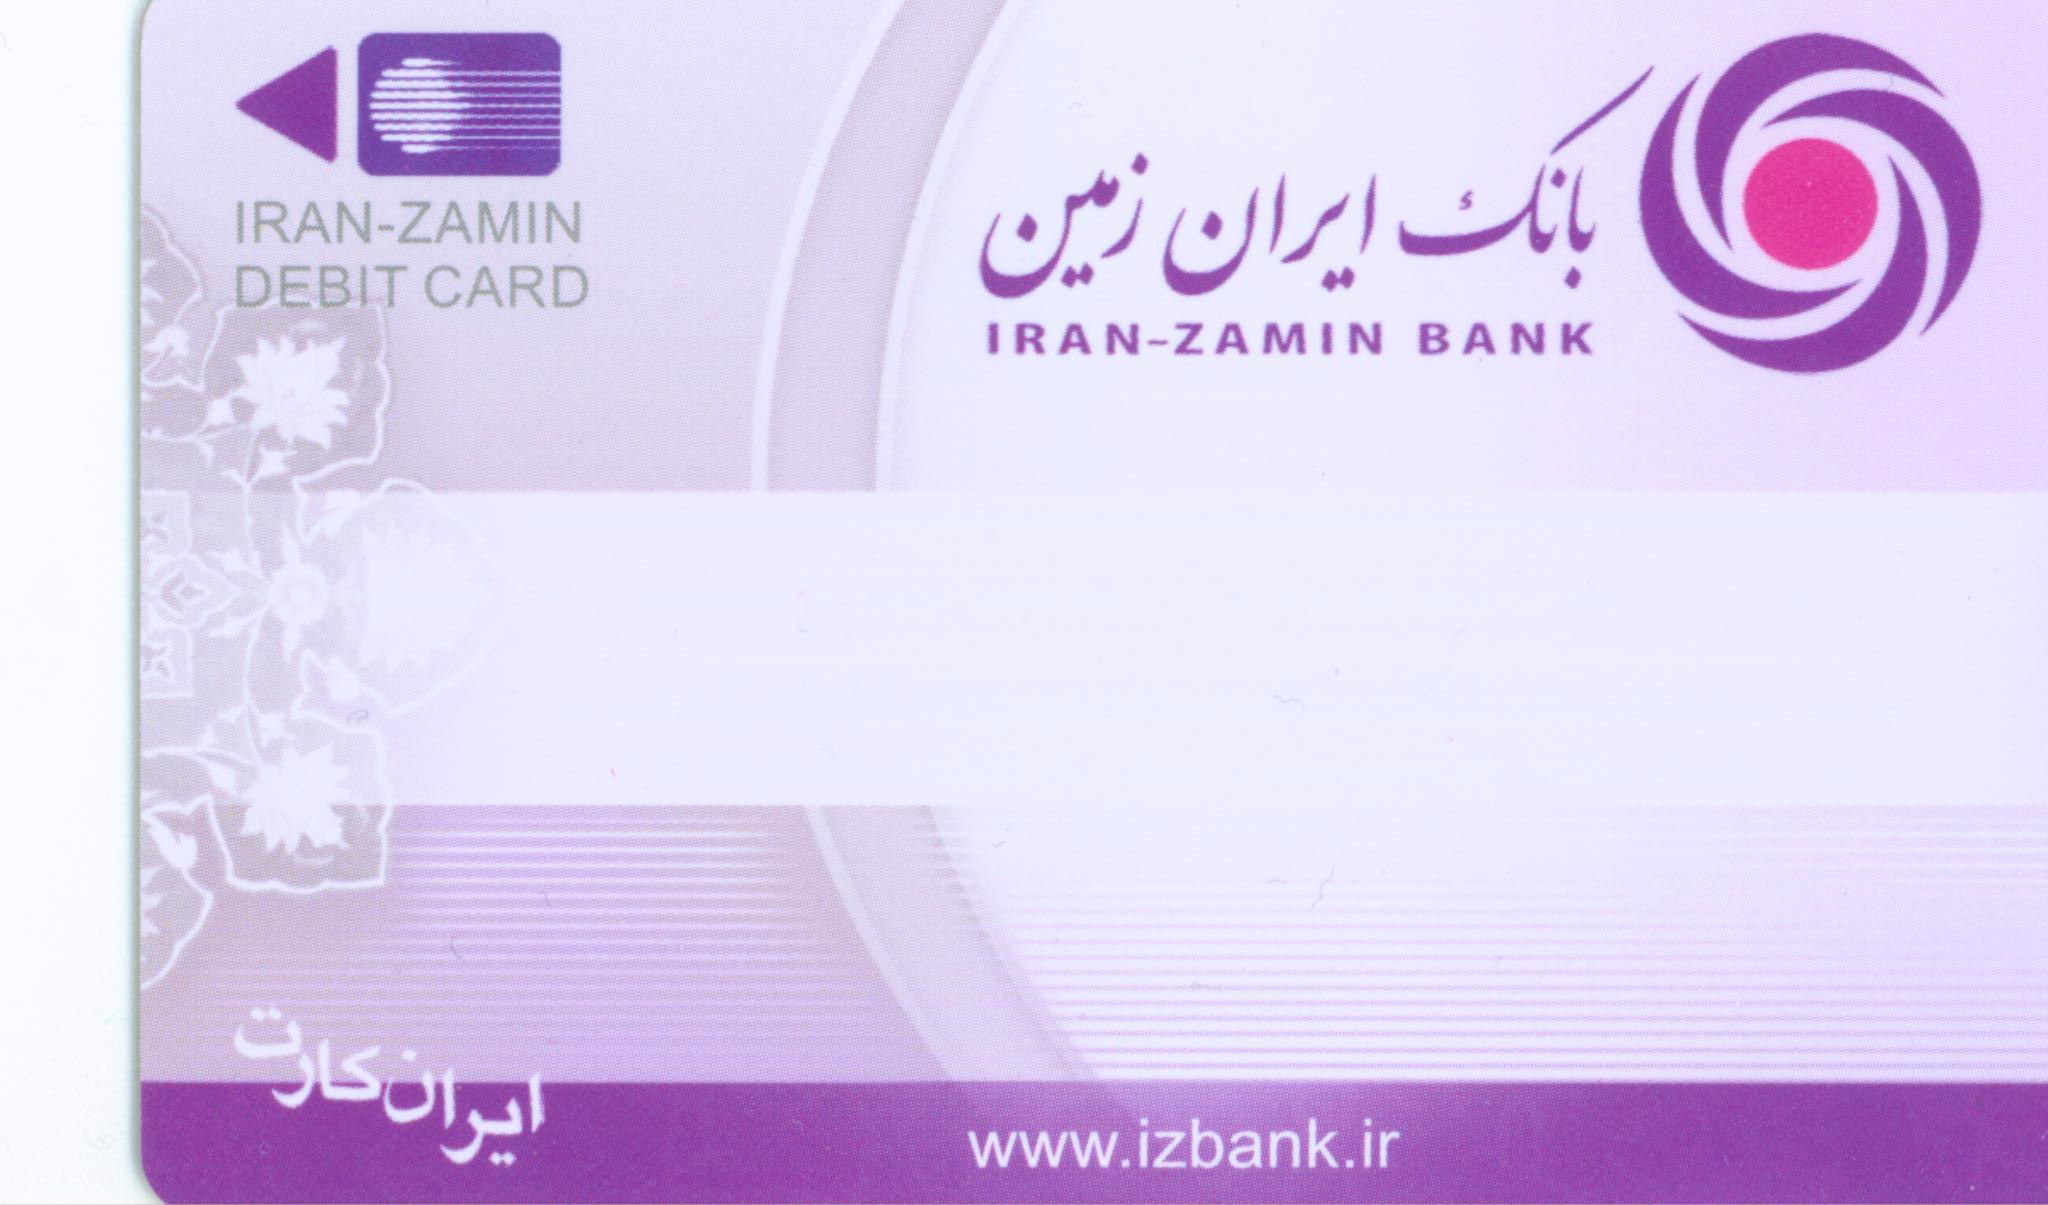 صدور کارت المثنی بانک ایران زمین با شماره کارت قبلی